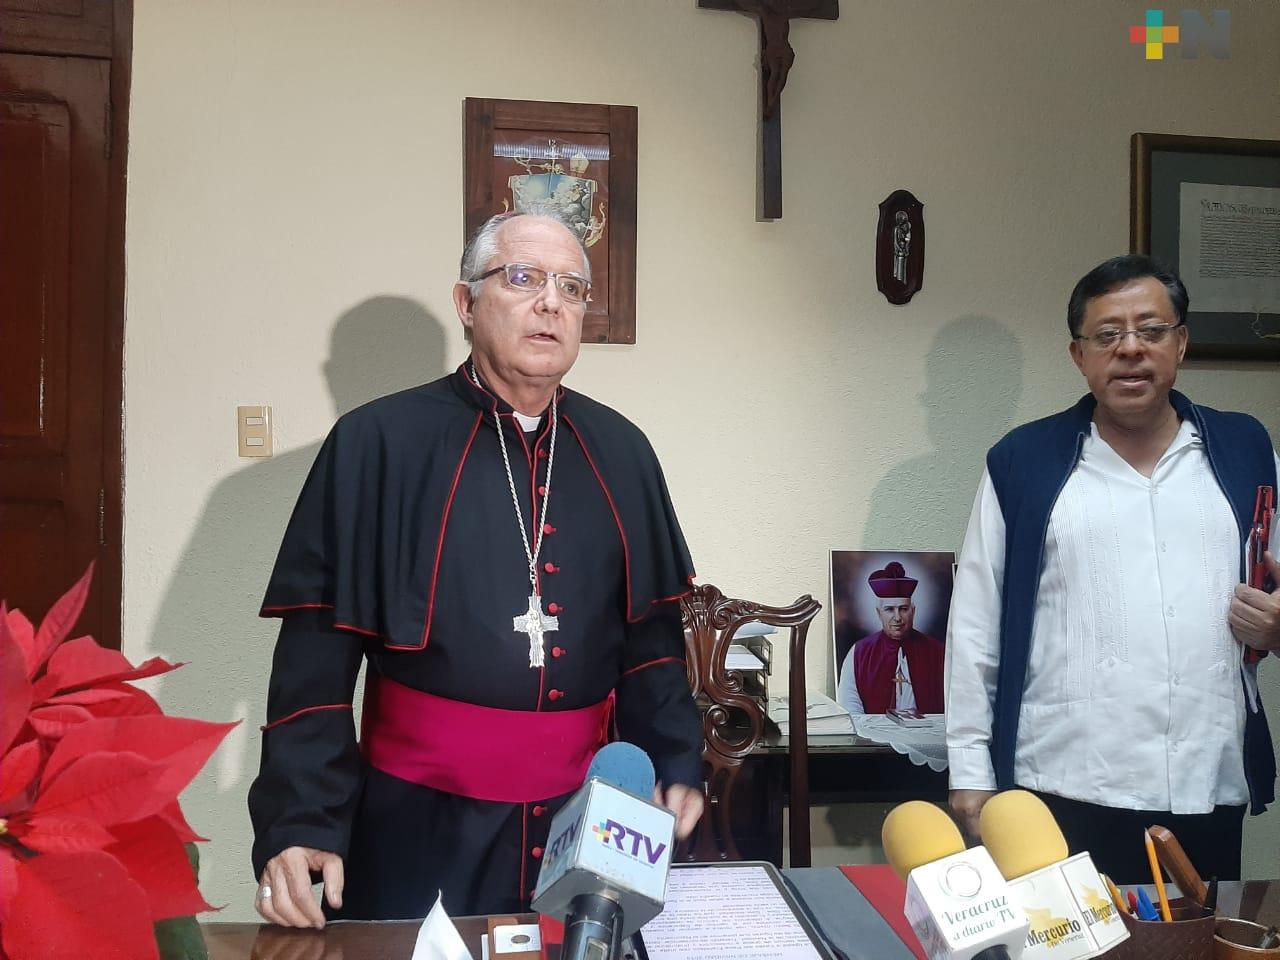 En tiempos de crisis, la familia es base para el desarrollo humano: obispo Carlos Briseño